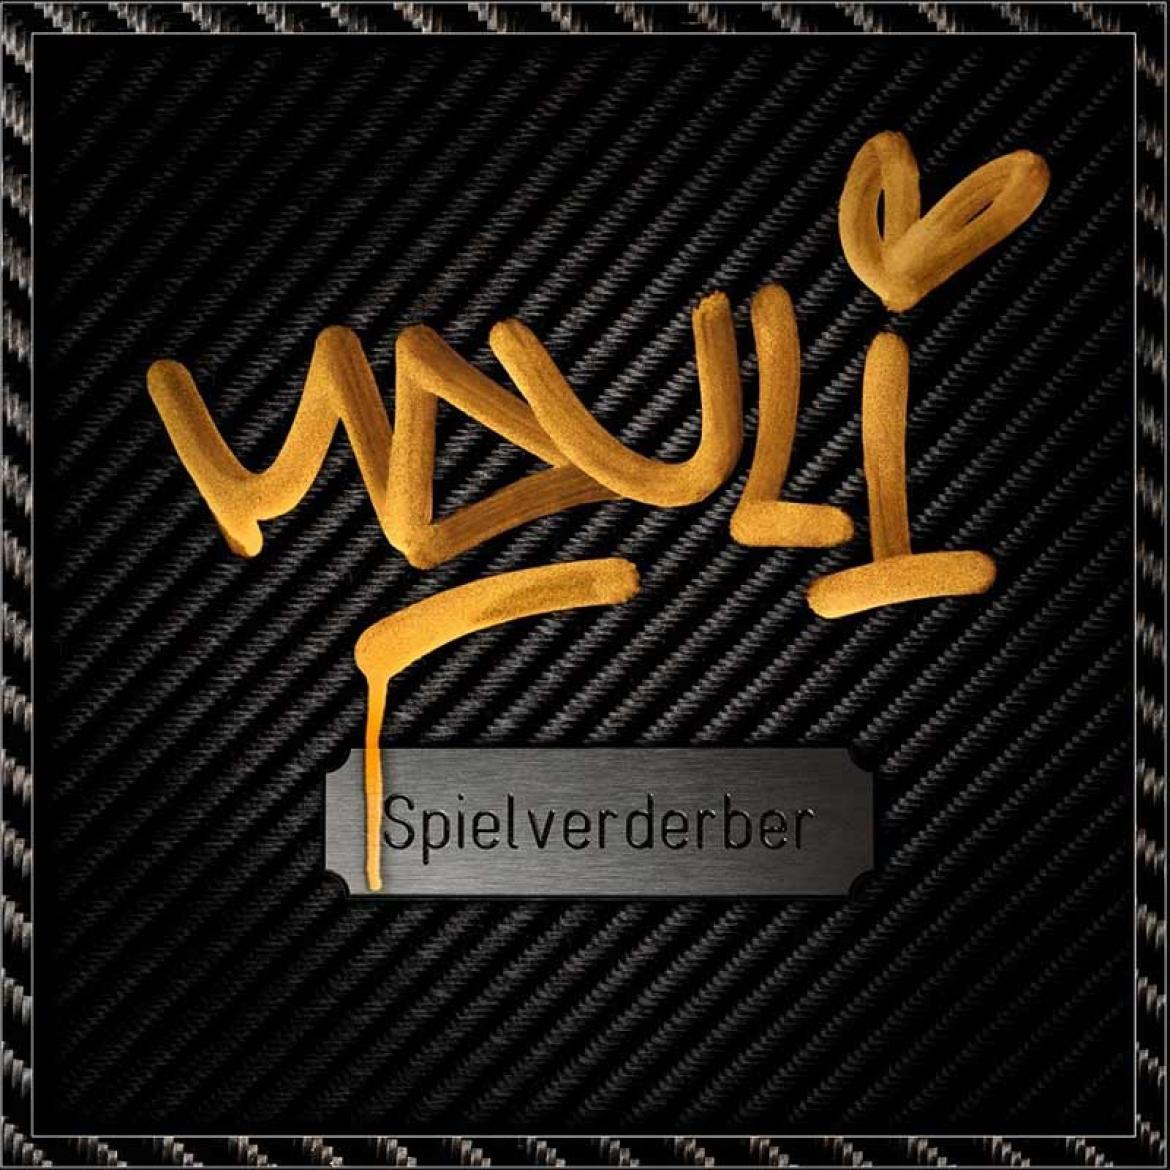 Cover von Mauli zum Album "Spielverderber"